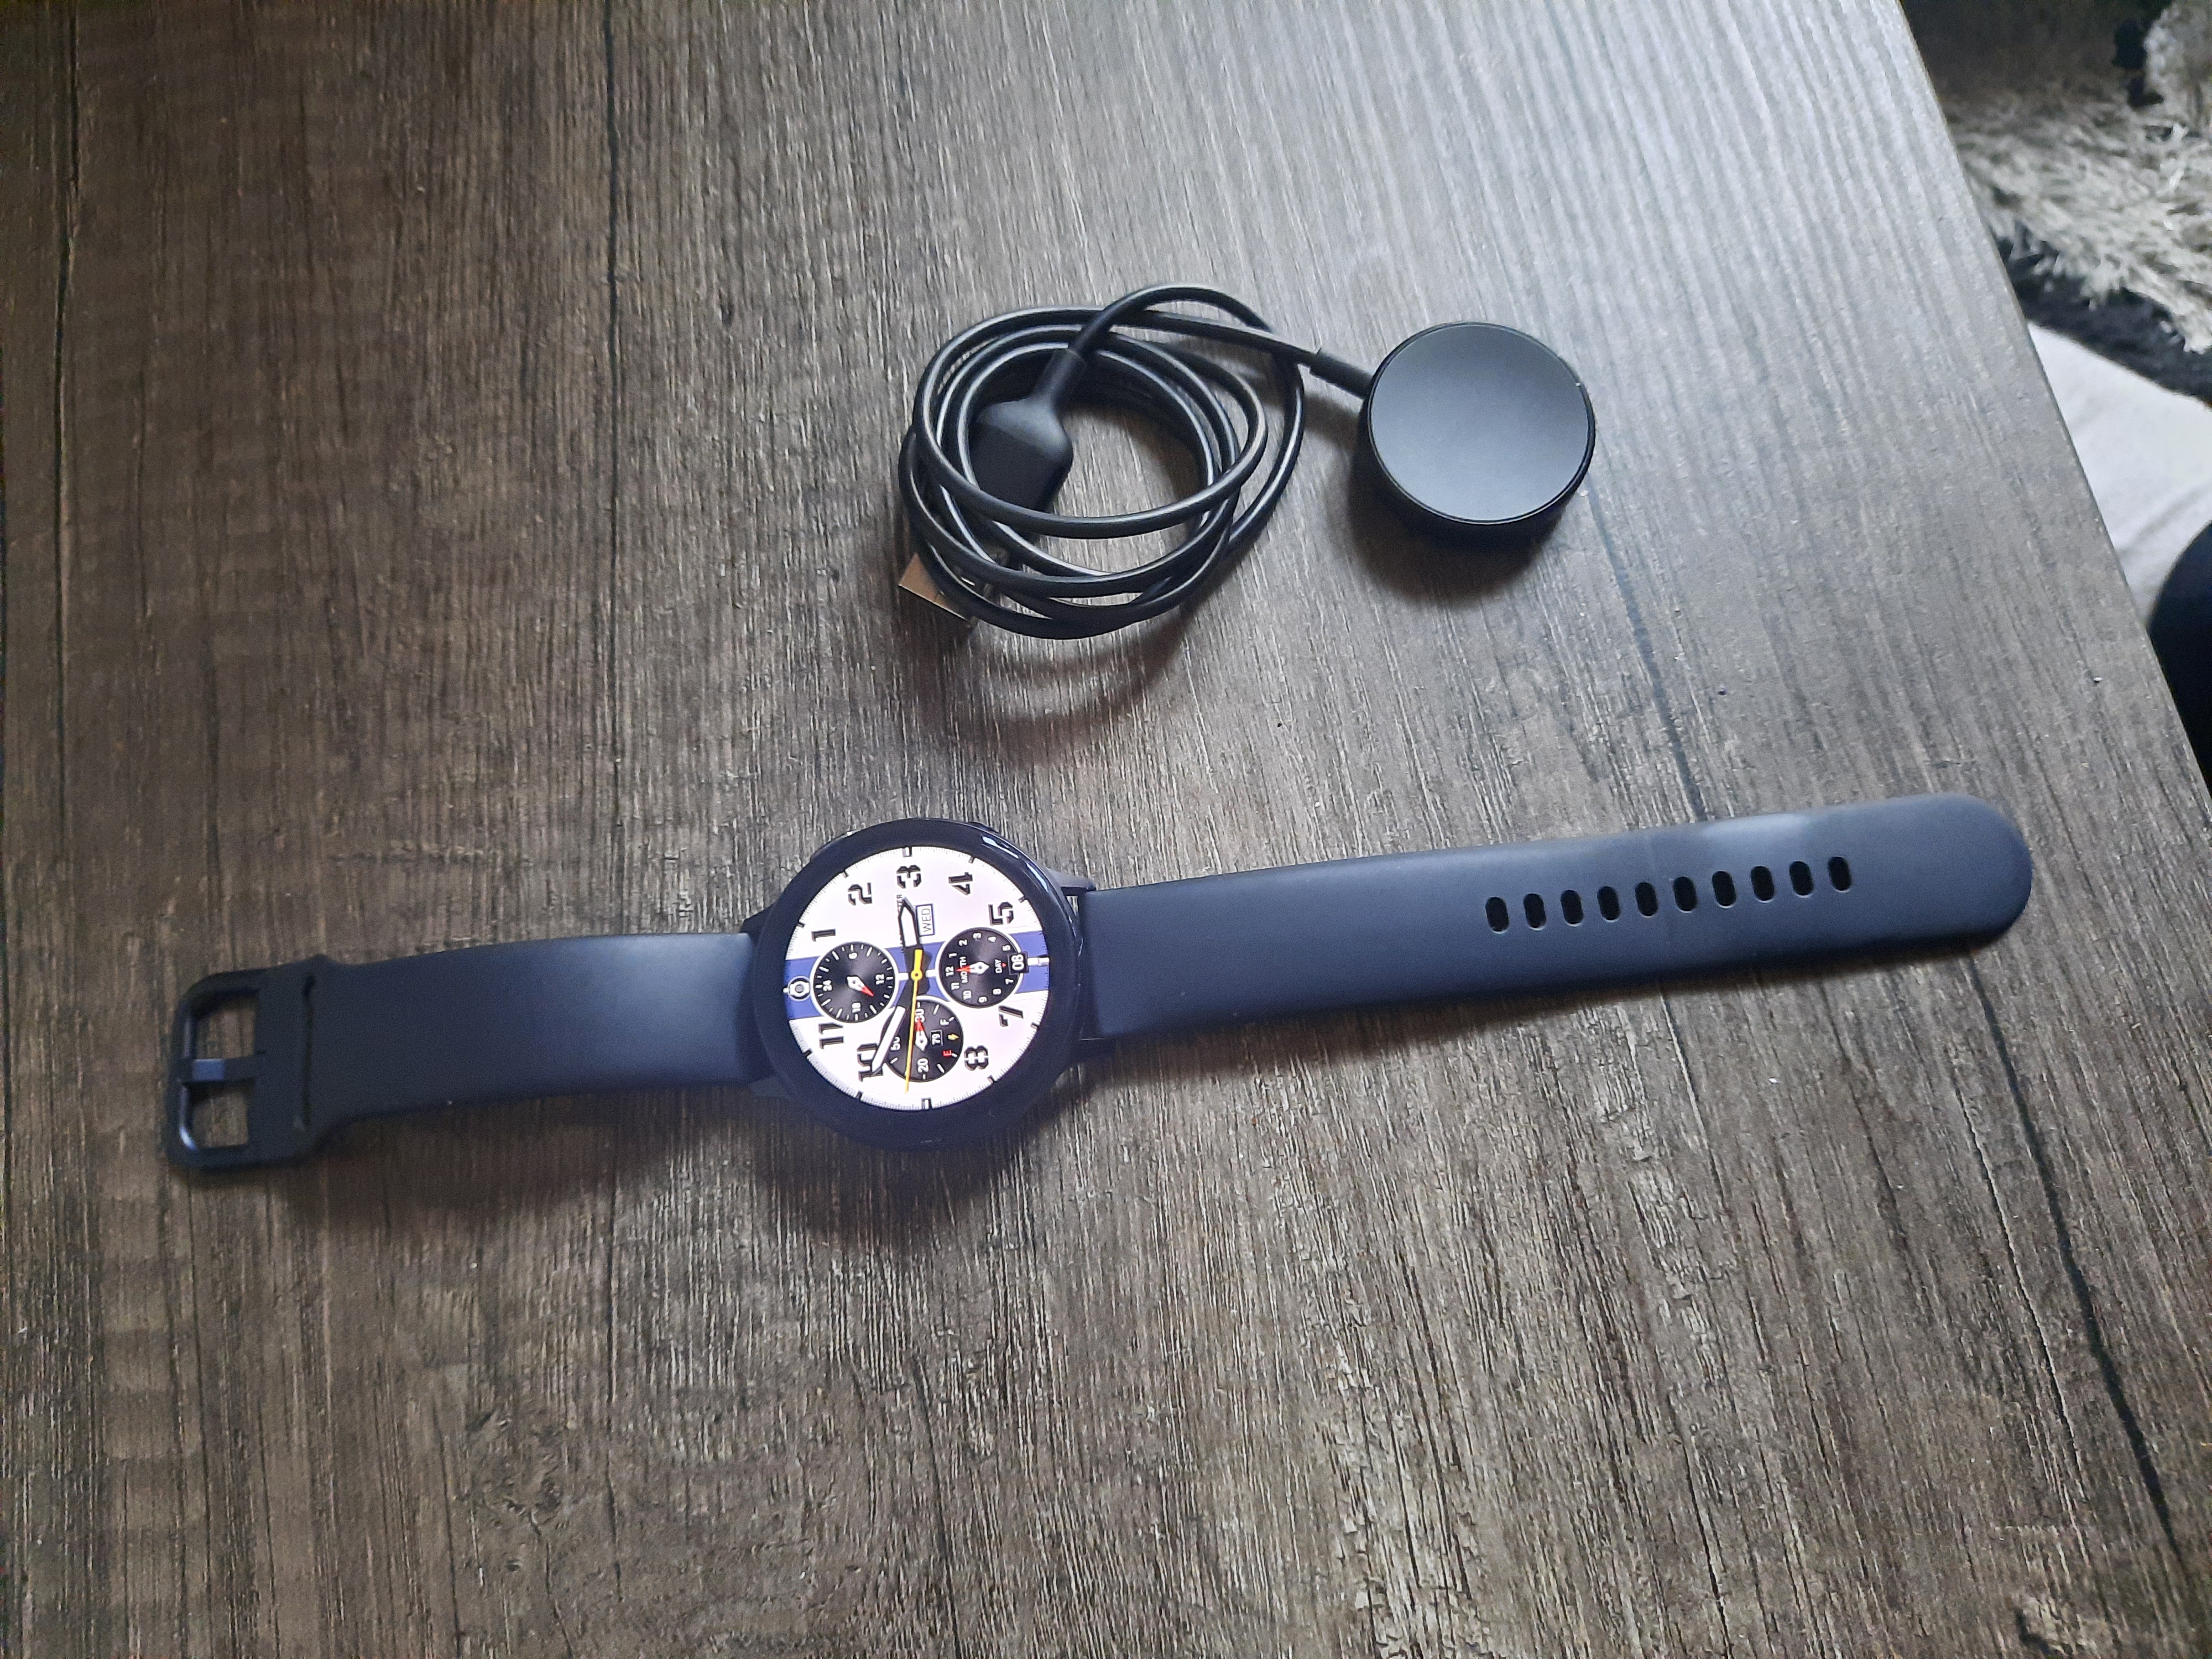 Samsung Glaxy watch active 2